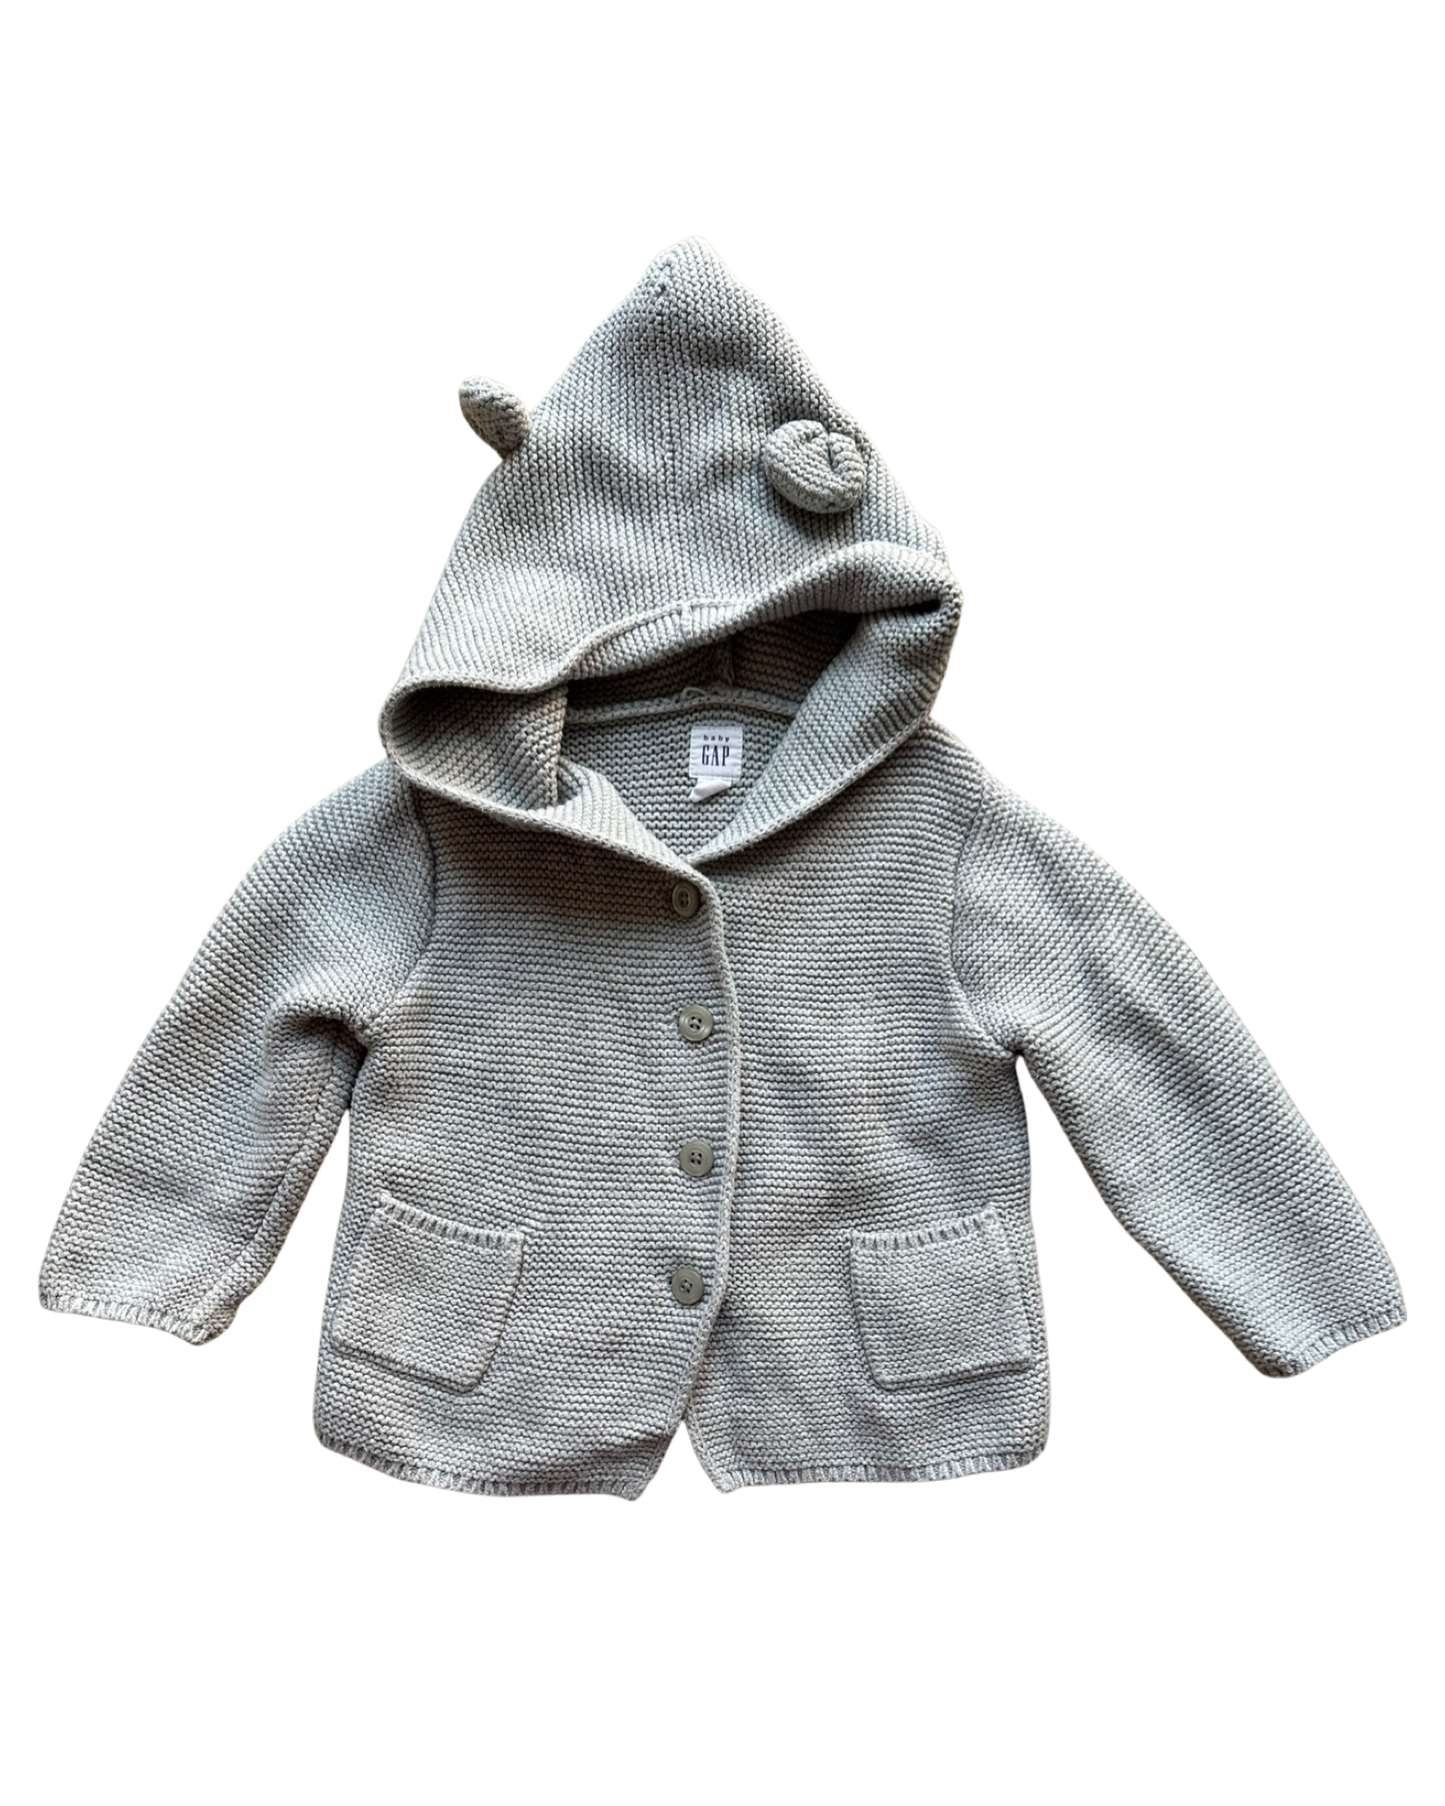 Baby Gap hooded Brannan Bear cardigan in grey (size 12-18mths)